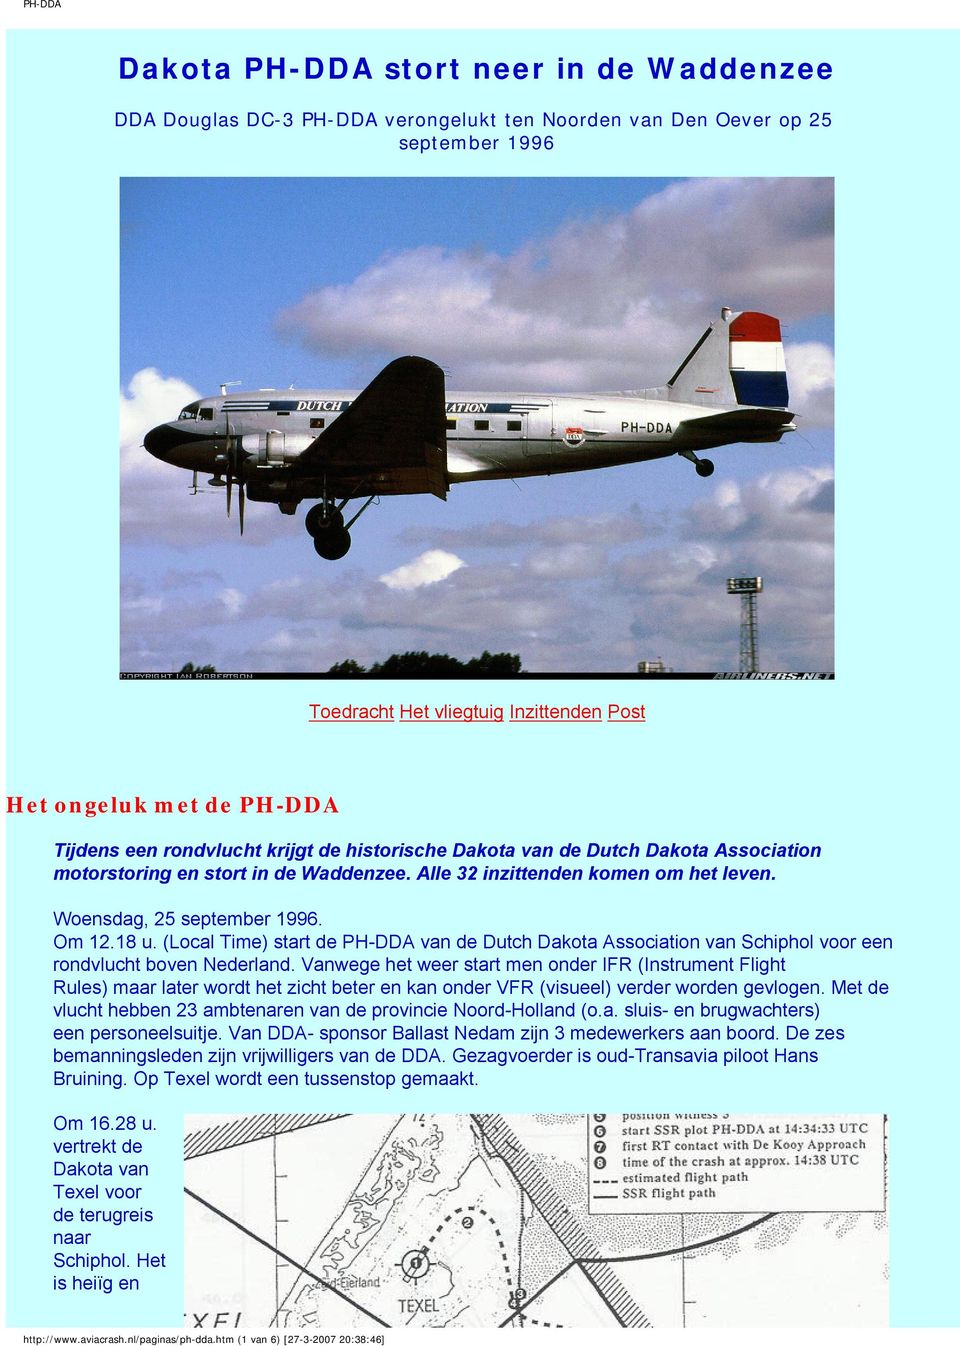 (Local Time) start de PH-DDA van de Dutch Dakota Association van Schiphol voor een rondvlucht boven Nederland.